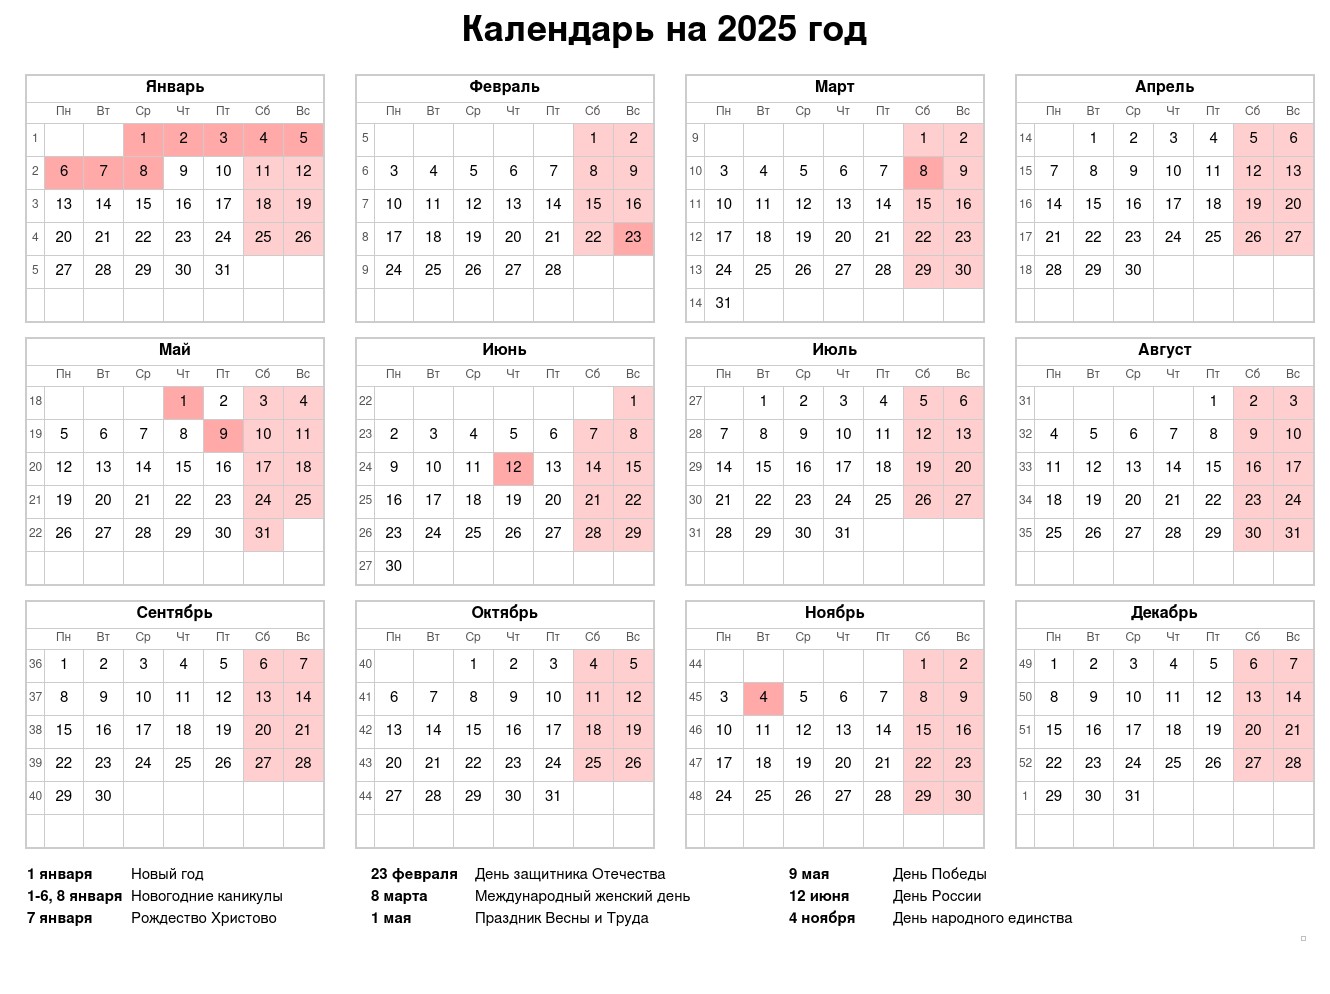 Простые настенные календари на 2025 год